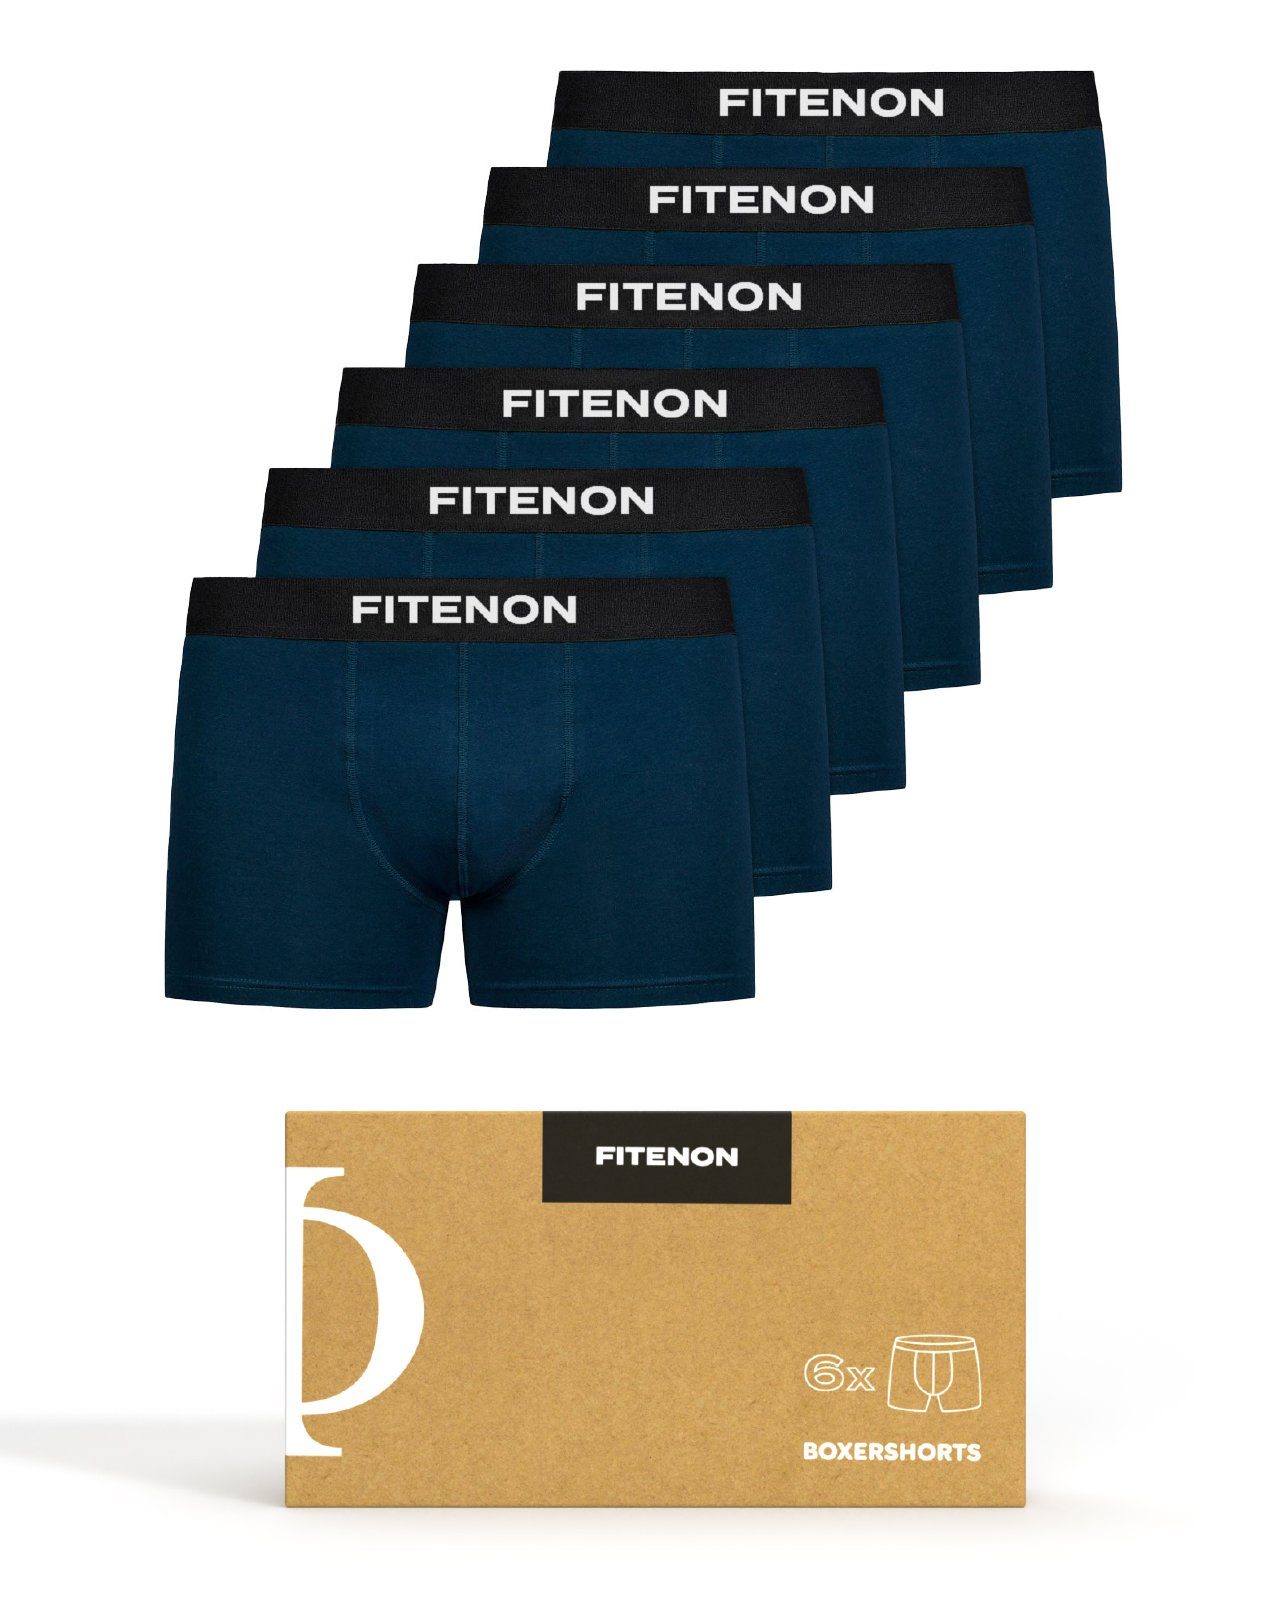 FITENON Boxershorts Herren Unterhosen, Unterwäsche, ohne kratzenden Zettel, Baumwolle (6 er Set) mit Logo-Elastikbund 6x Navy